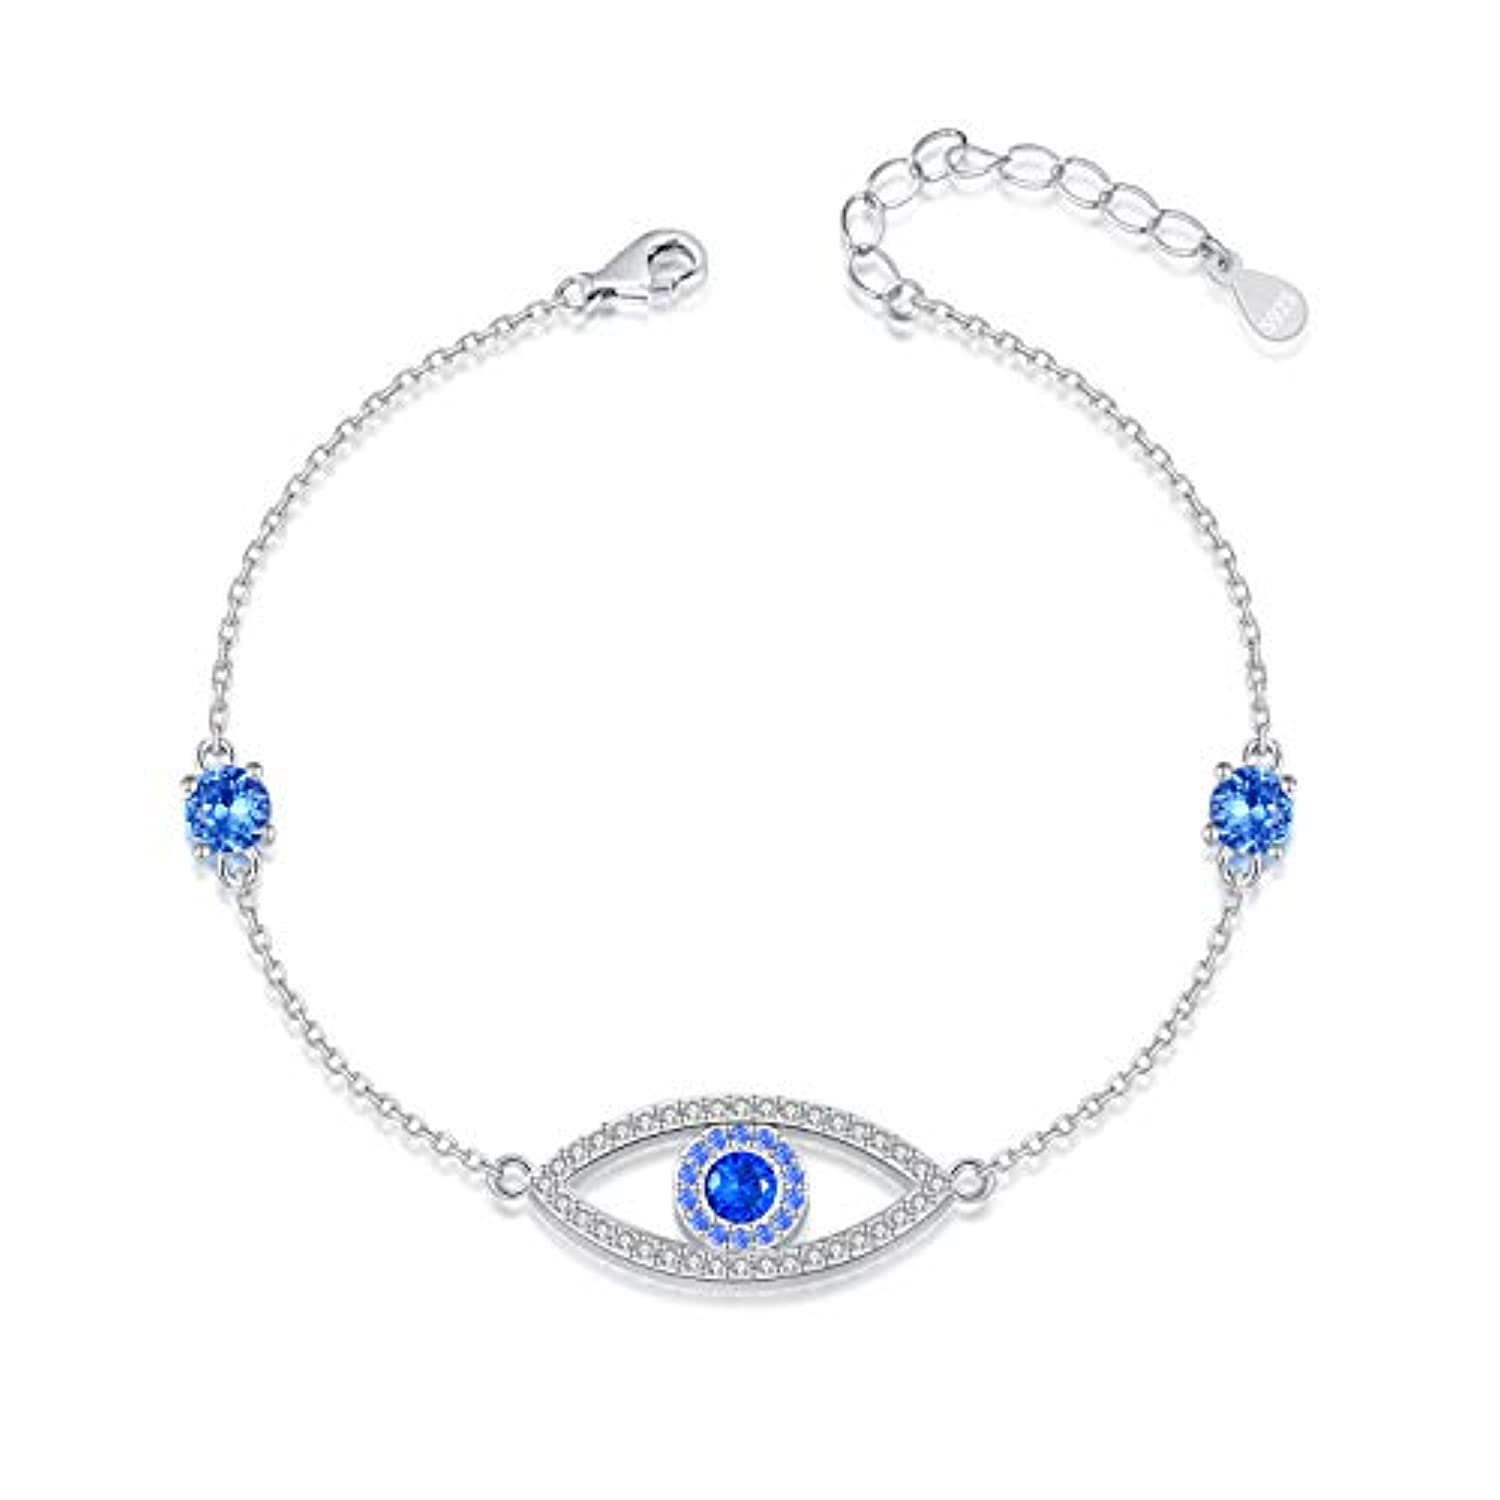 Something Blue for Bride Ankle Bracelet, Swarovski Crystals and Pearls |  Crystal Blue Designs